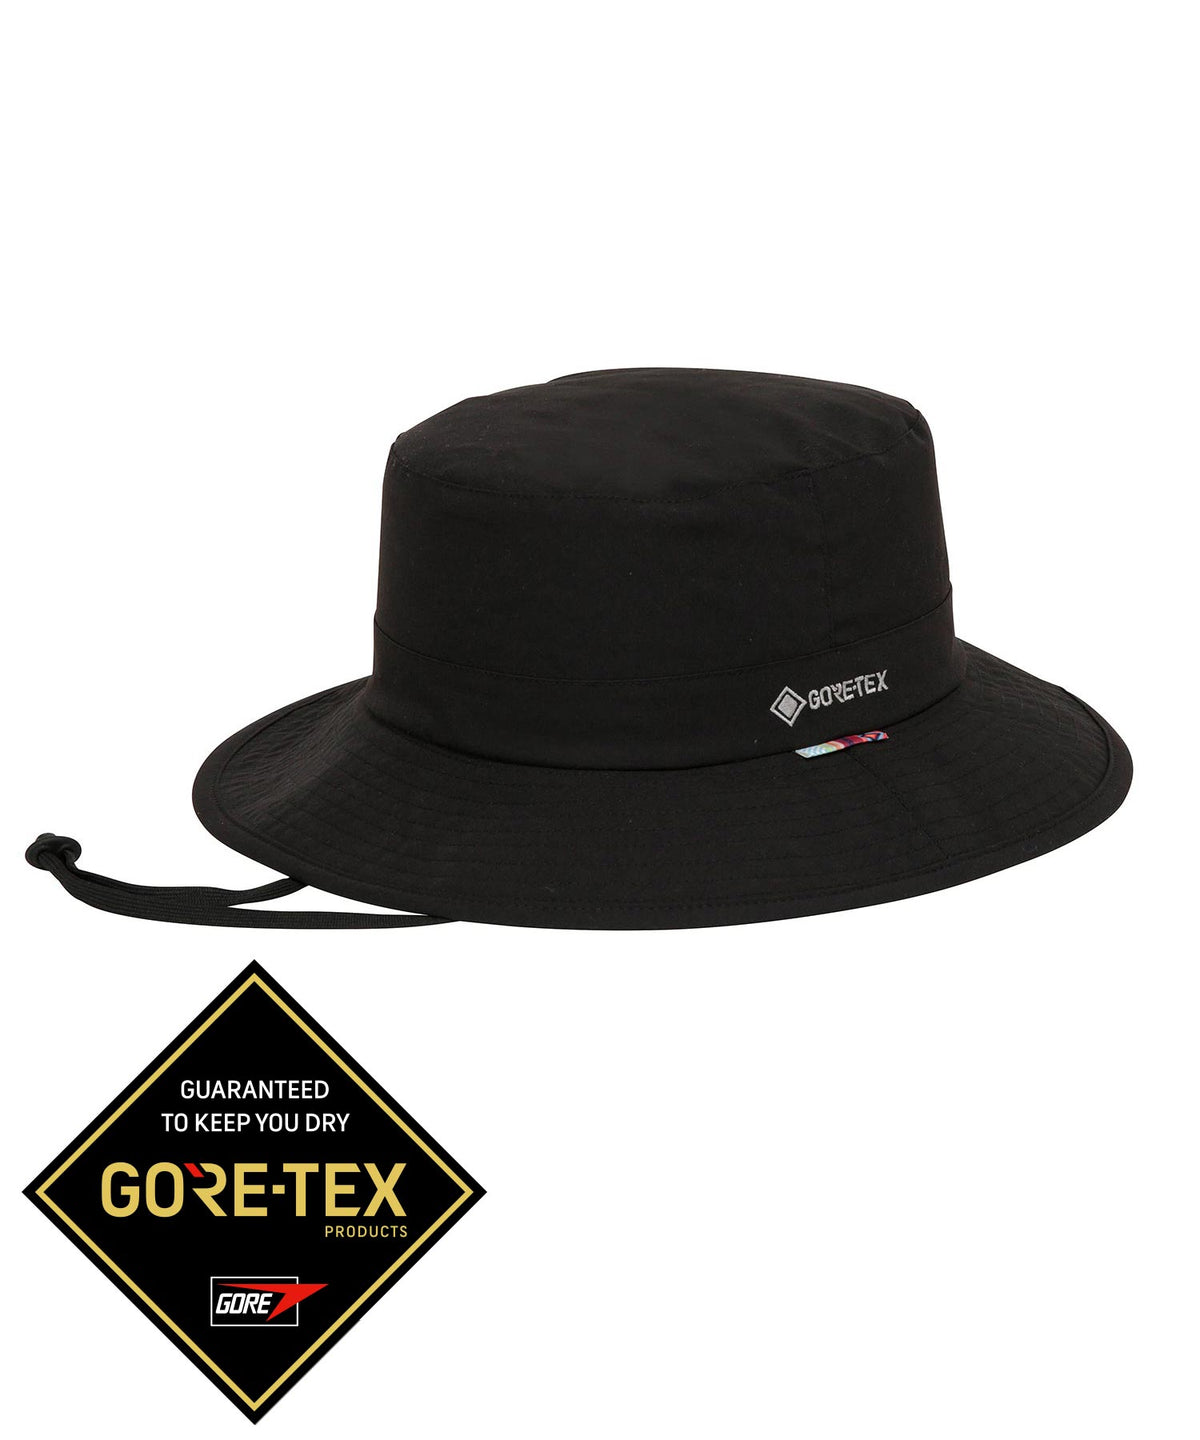 【MENS】phenix GT ハットM アウトドアハット 帽子 日よけ 日焼け防止 ゴアテックスウェア /phenix outdoor(フェニックスアウトドア)